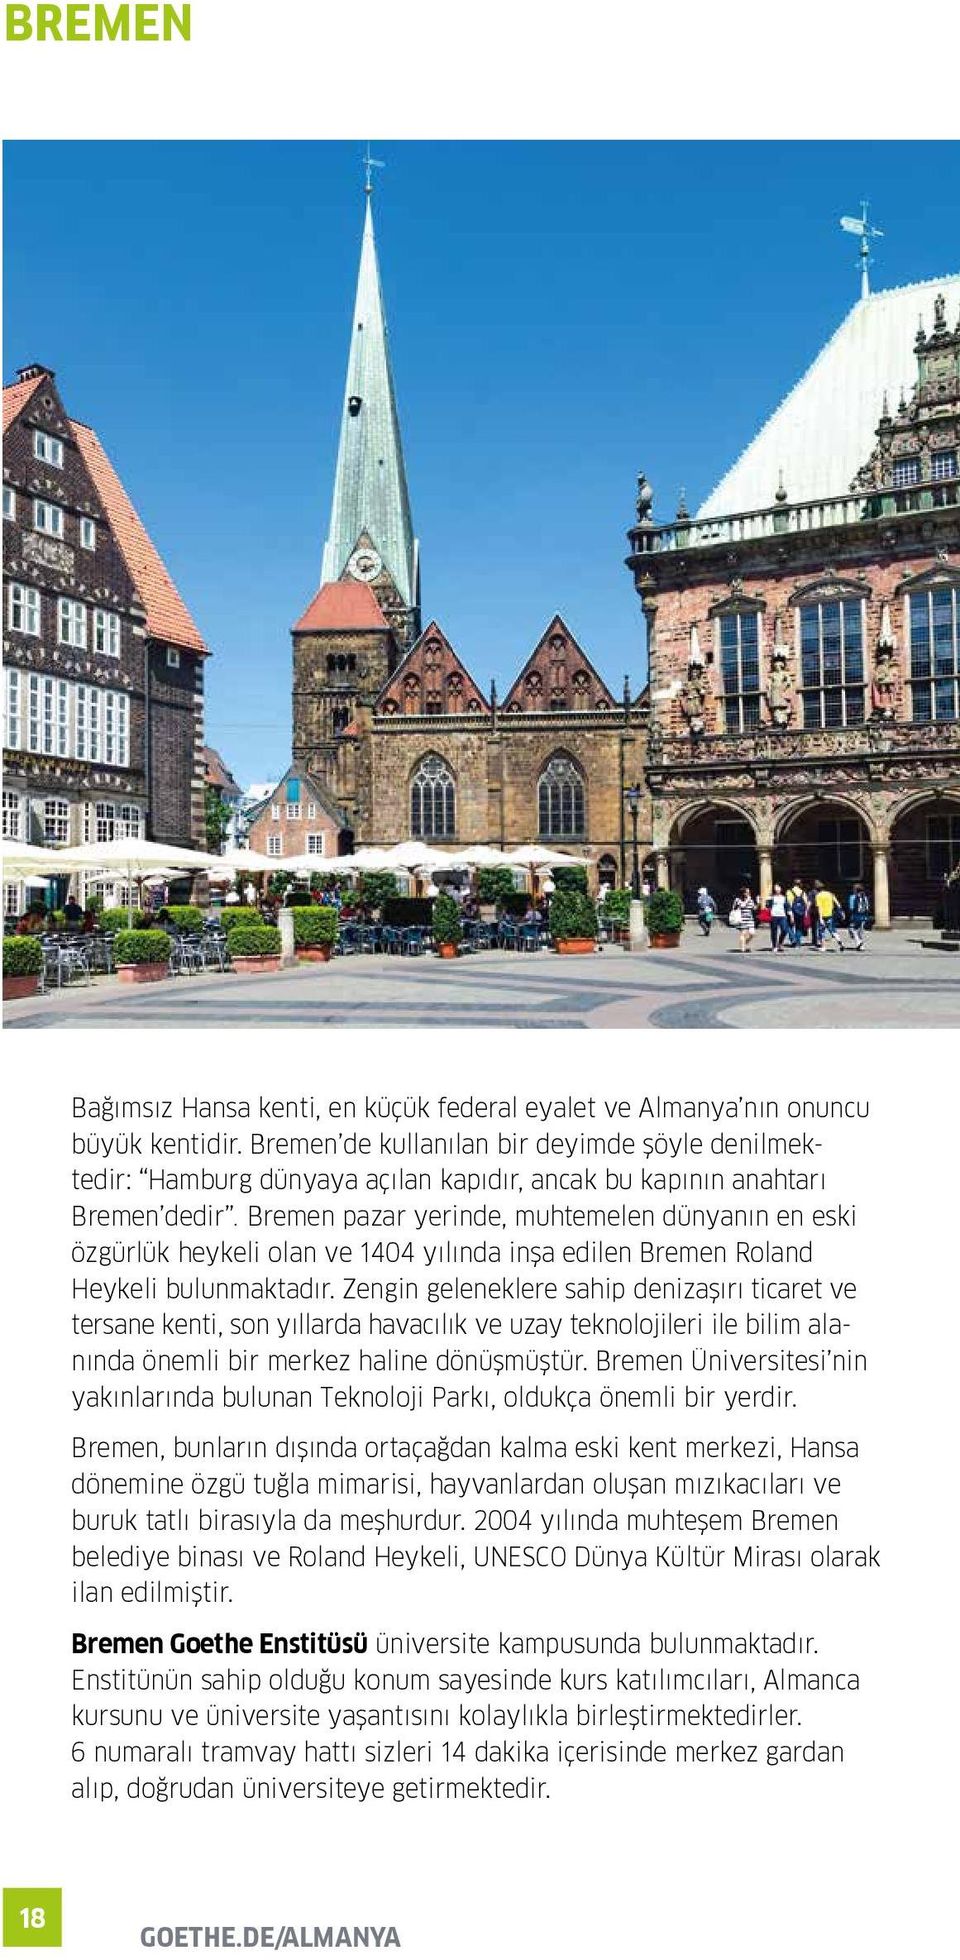 Bremen pazar yerinde, muhtemelen dünyanın en eski özgürlük heykeli olan ve 1404 yılında inşa edilen Bremen Roland Heykeli bulunmaktadır.